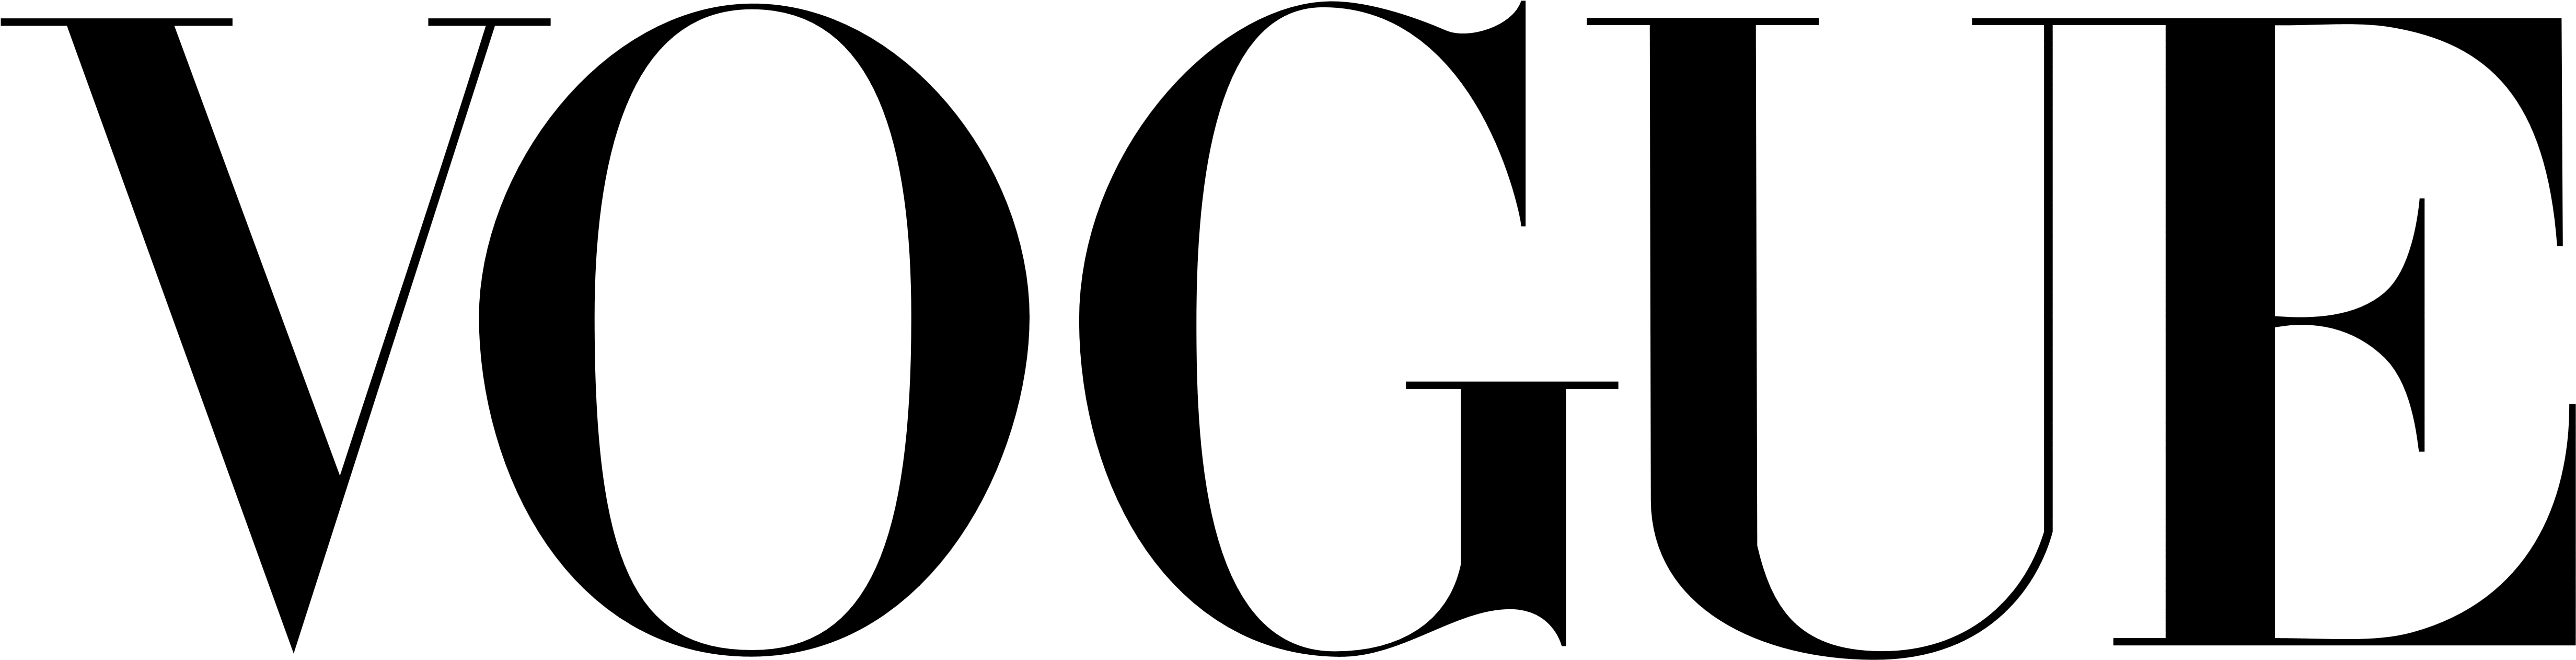 Calvin Klein Logo Download PNG Image